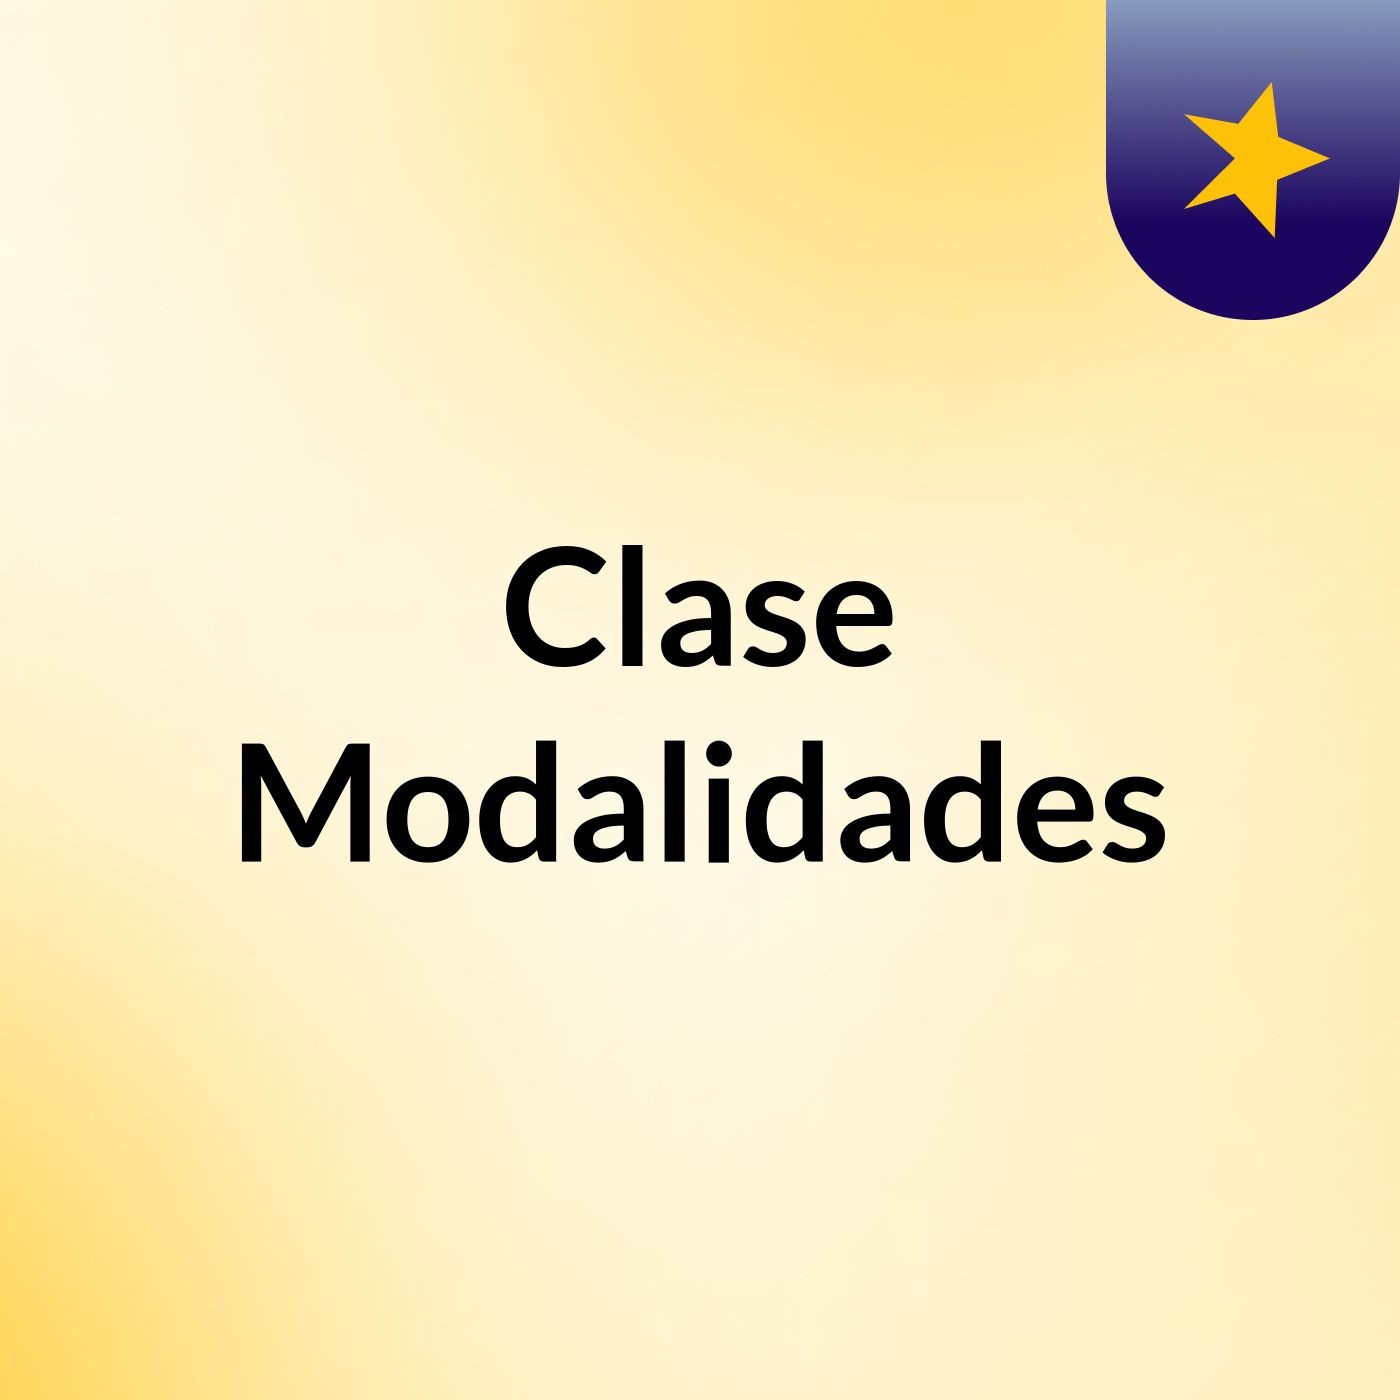 Clase Modalidades